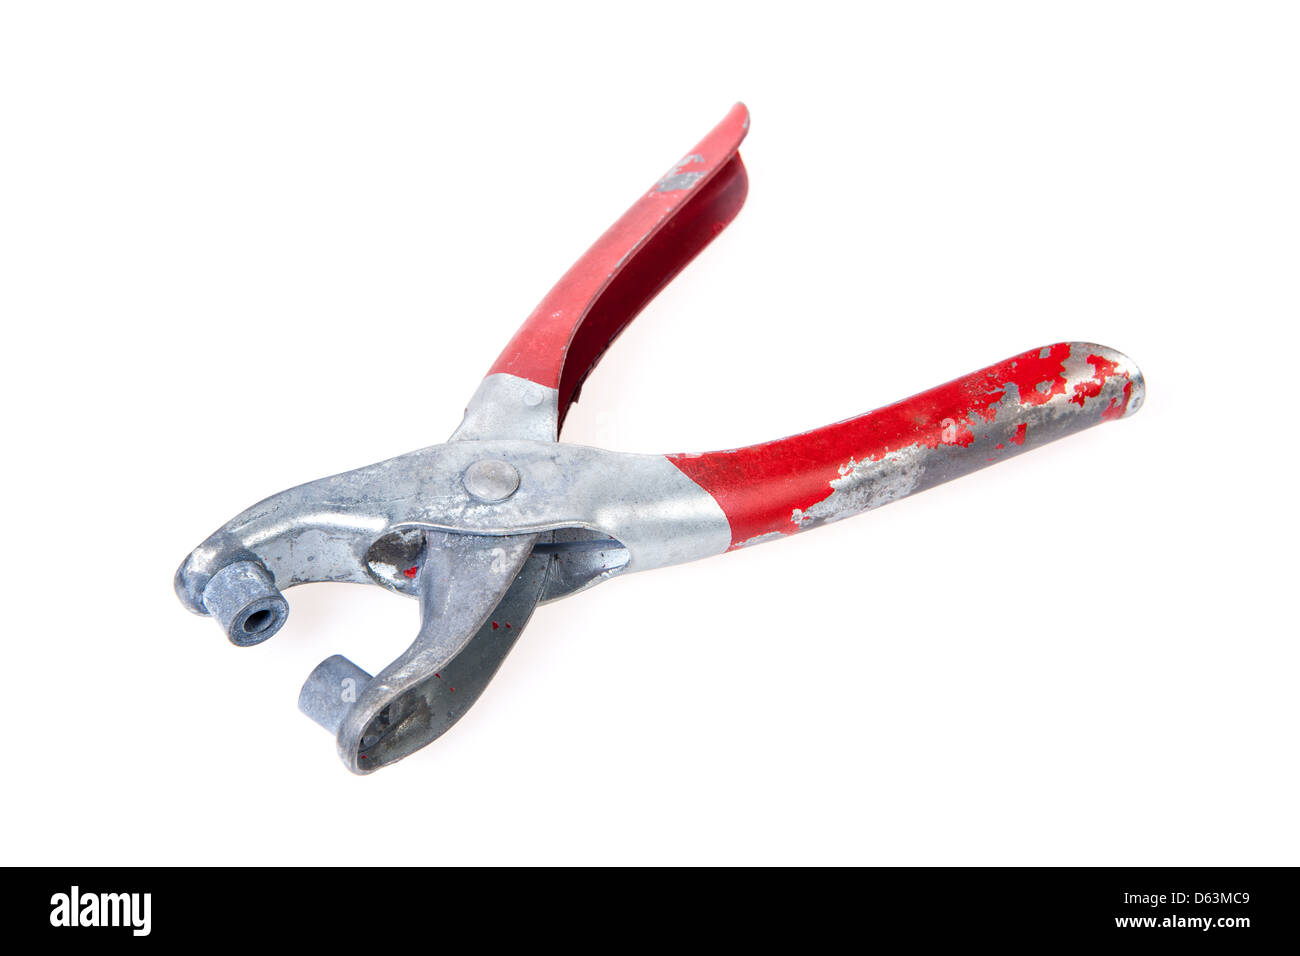 Un outil de rivetage, bien utilisé, avec une poignée rouge dont la peinture écaille. Banque D'Images